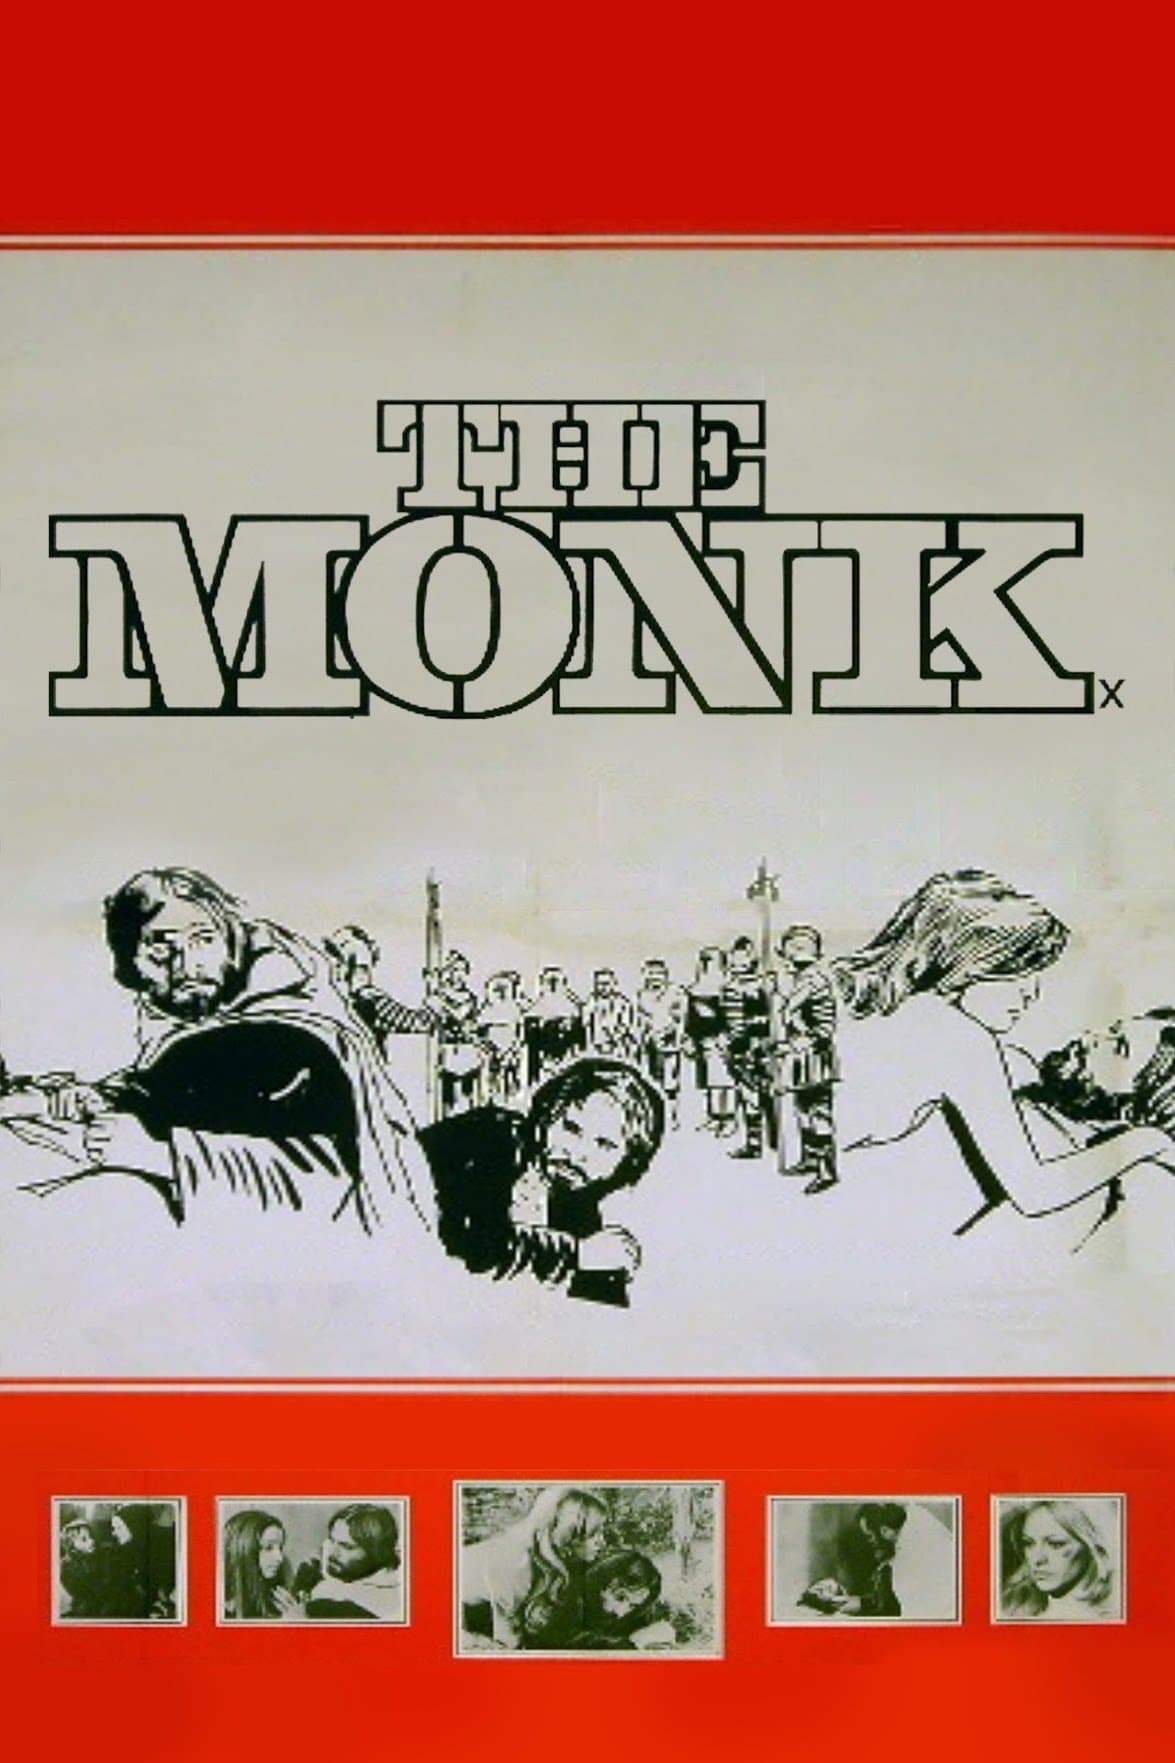 Le moine (1972)